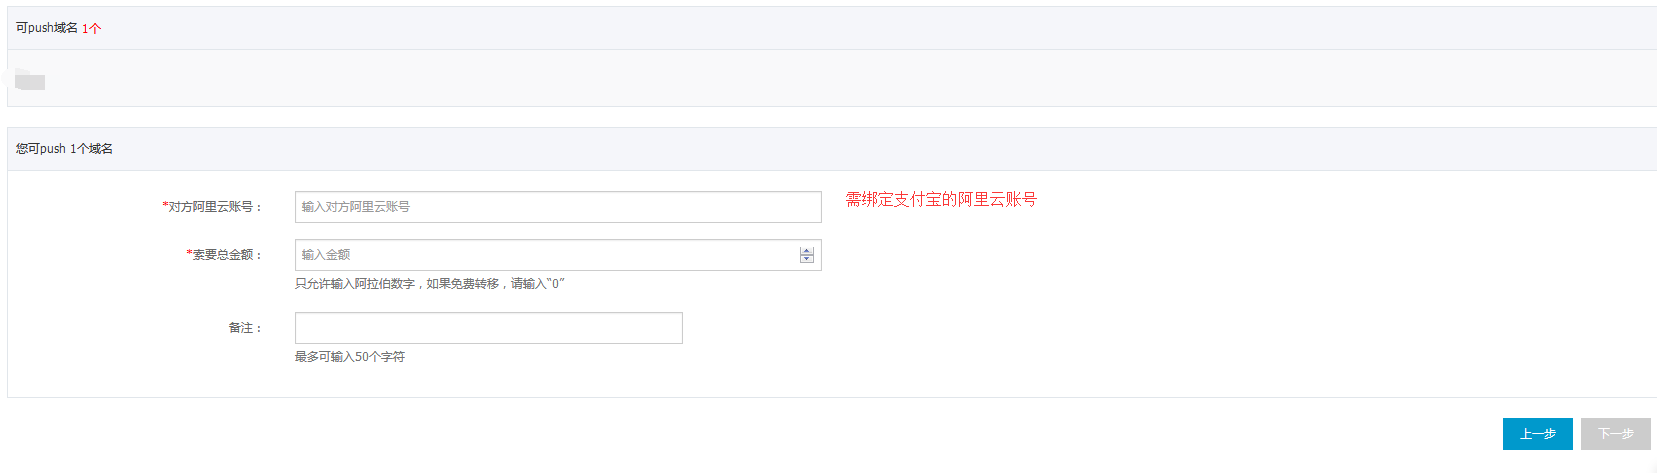 阿里云aliyun.com/万网www.net.cn的域名如何带价PUSH转移及转出